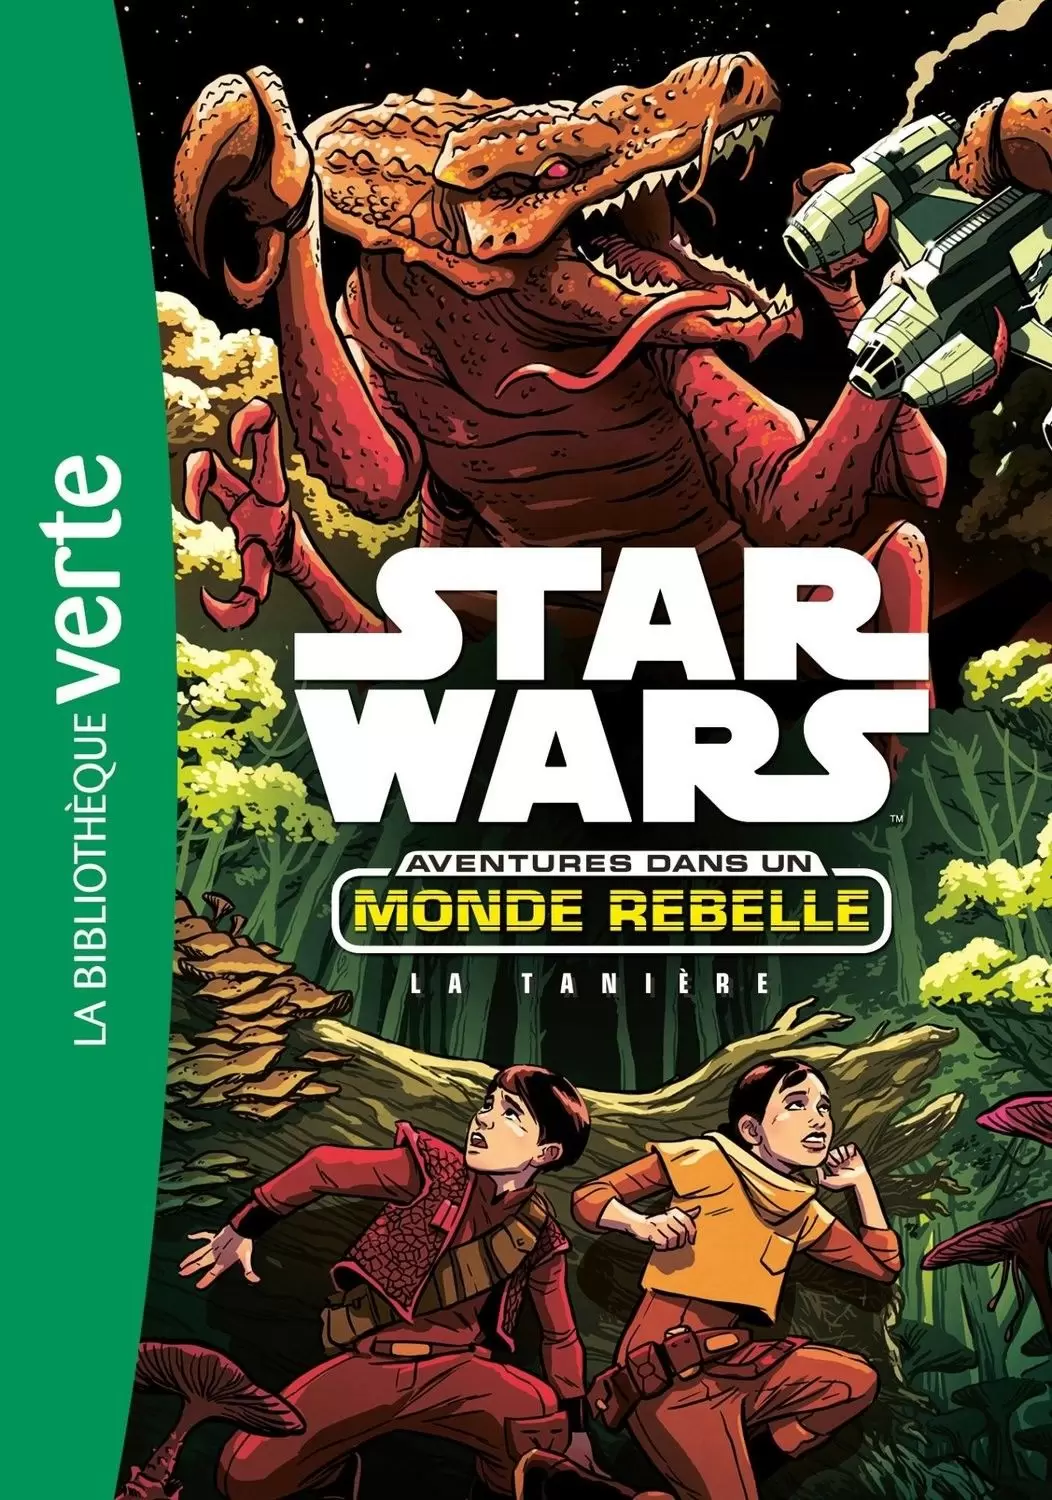 Star Wars - Aventures dans un Monde Rebelle - La Tanière